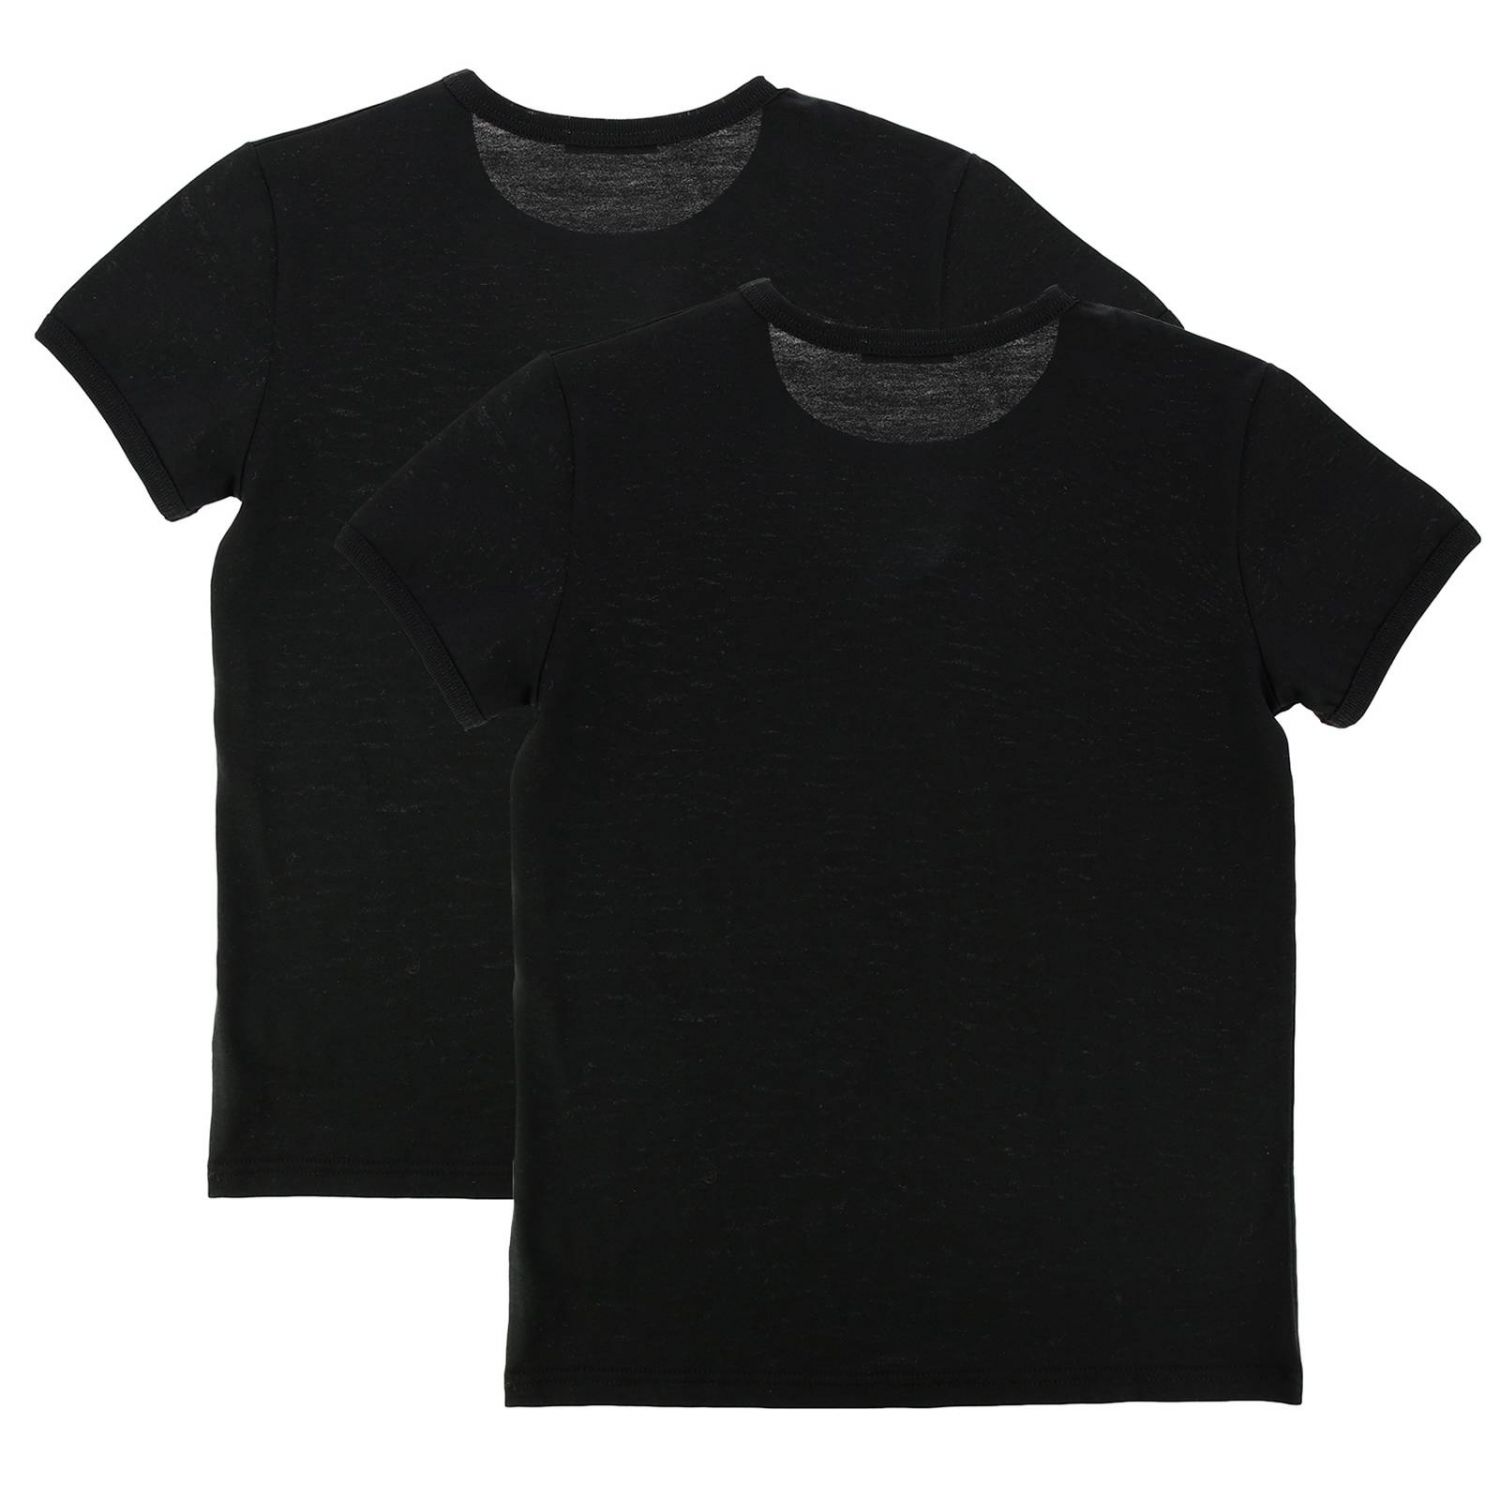 Dolce & Gabbana Outlet: T-shirt kids | T-Shirt Dolce & Gabbana Kids ...